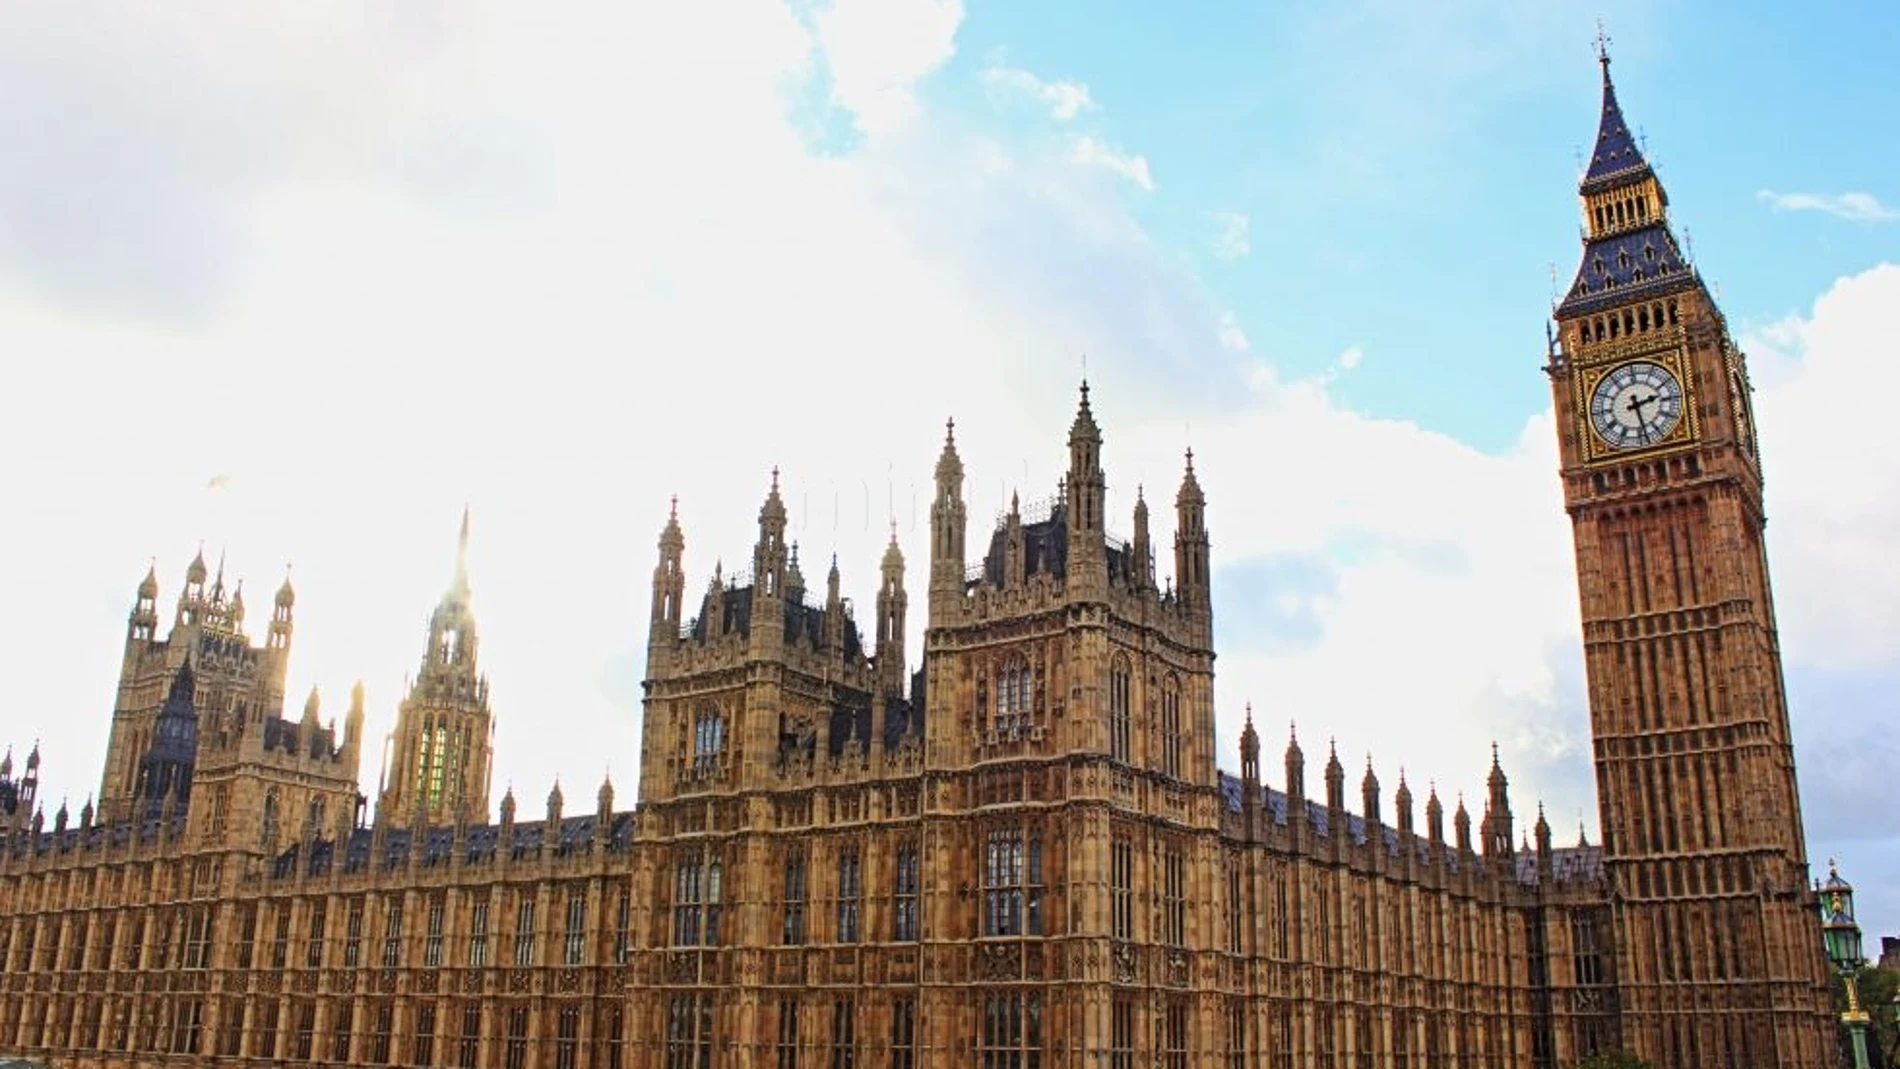 La falta de mantenimiento amenaza el edificio del Parlamento británico